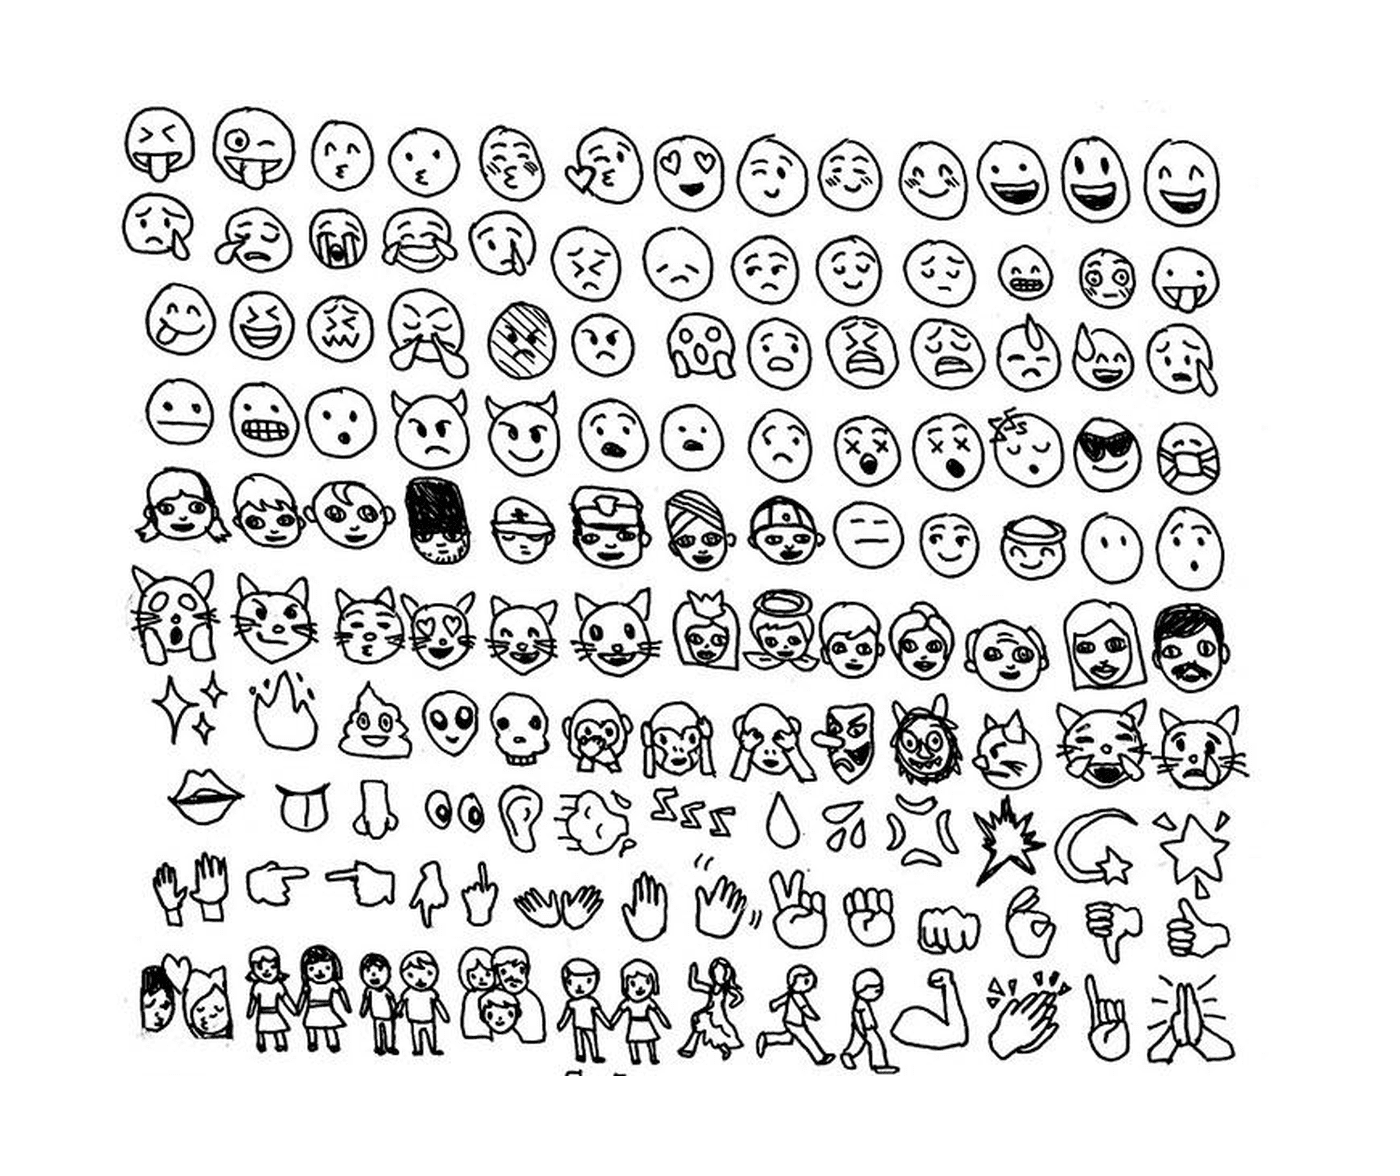  Комплект различных лиц, нарисованных на бумаге 